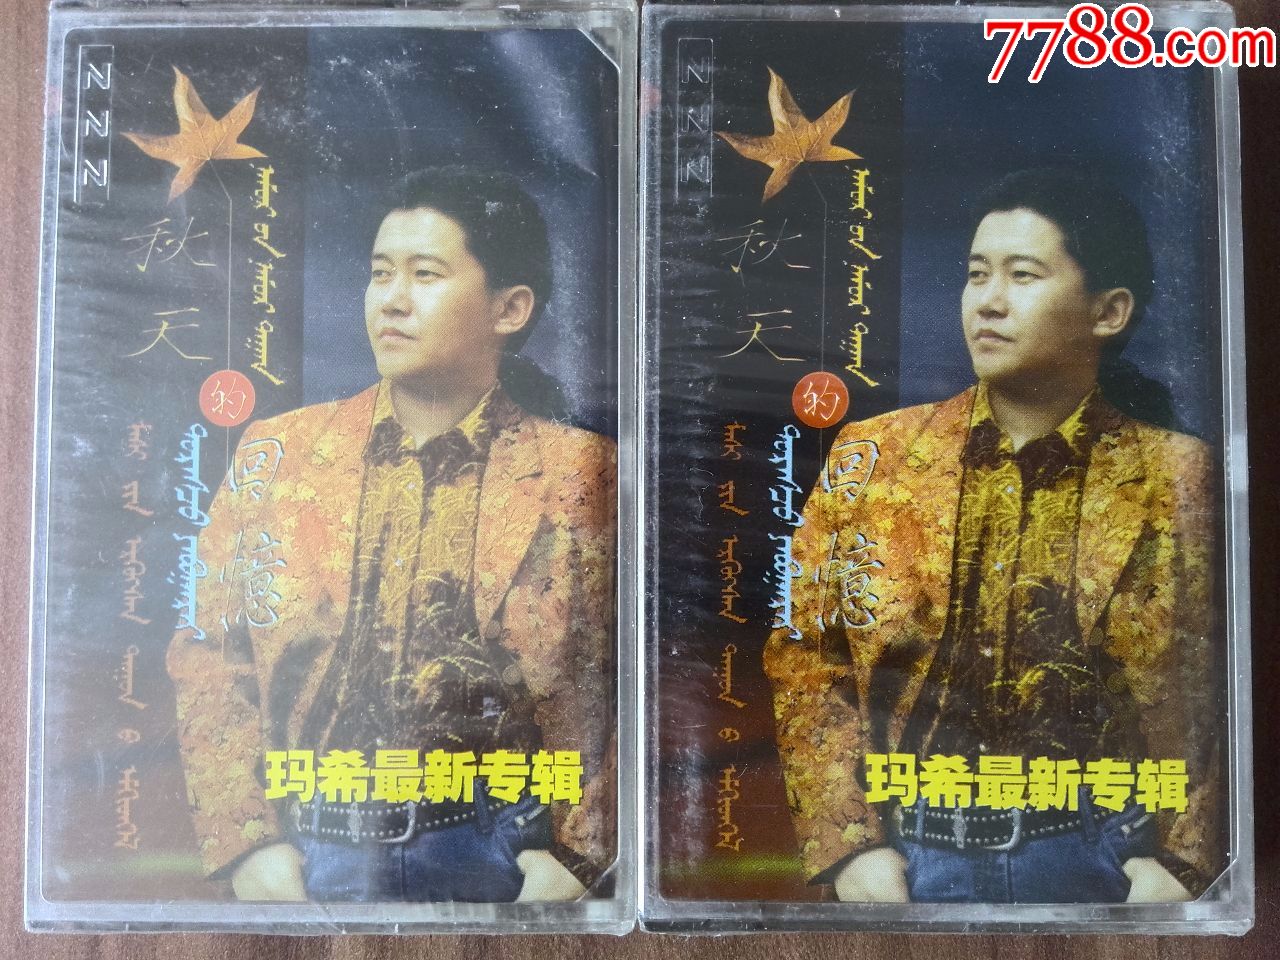 全新未拆,蒙古族歌手玛希演唱专辑《秋天的回忆》2盘